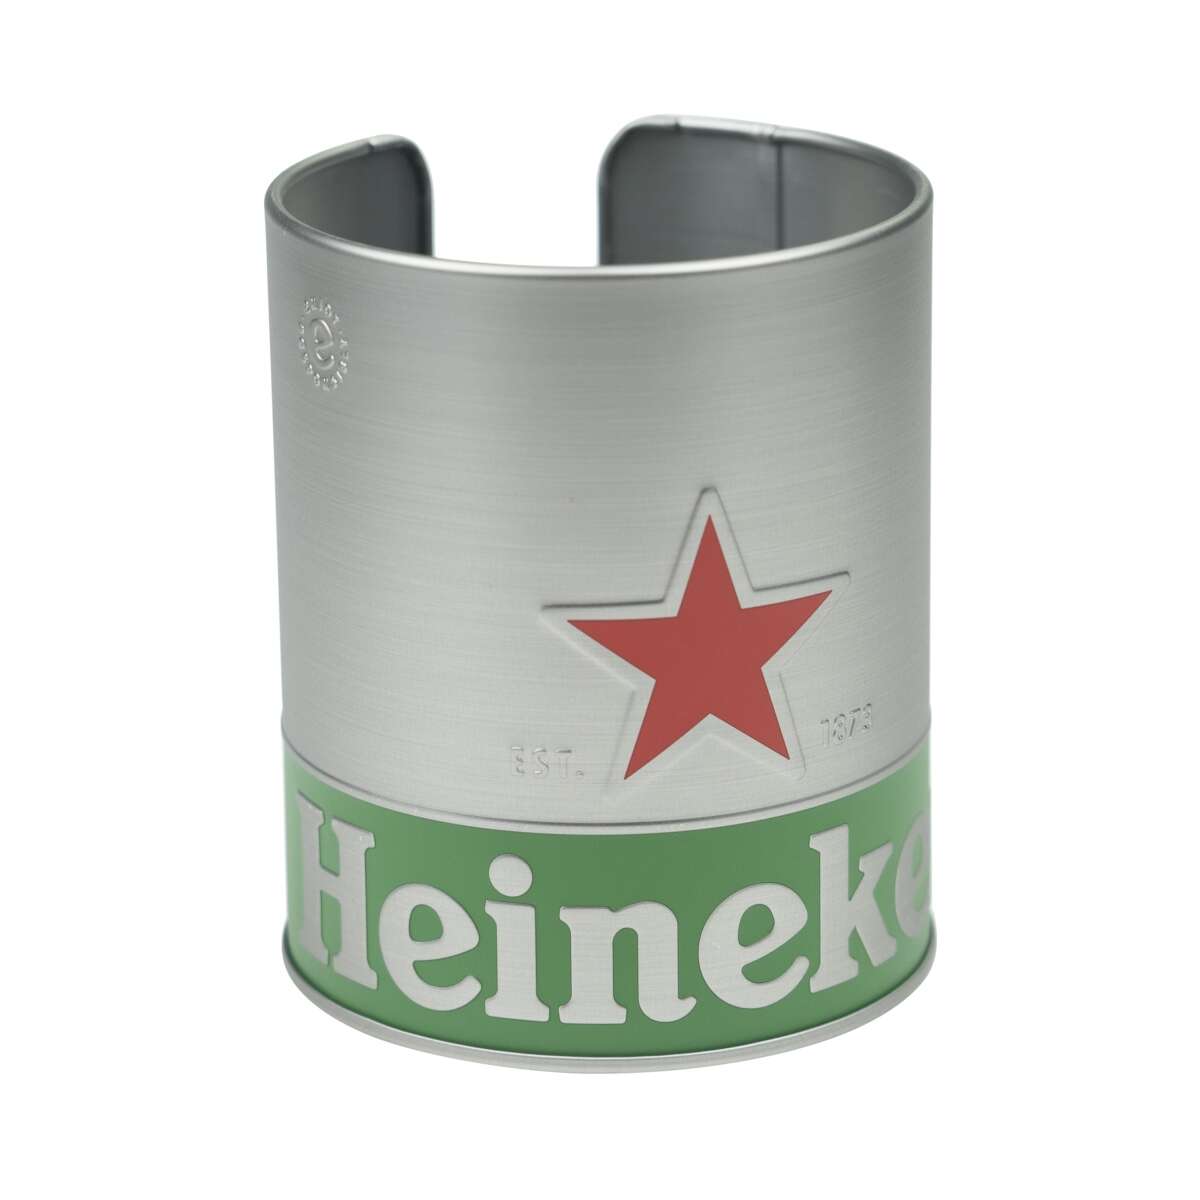 https://barmeister24.de/media/image/product/9622/lg/heineken-bier-deckel-halter-untersetzer-coaster-abtropf-niederlande-brouwerij.jpg